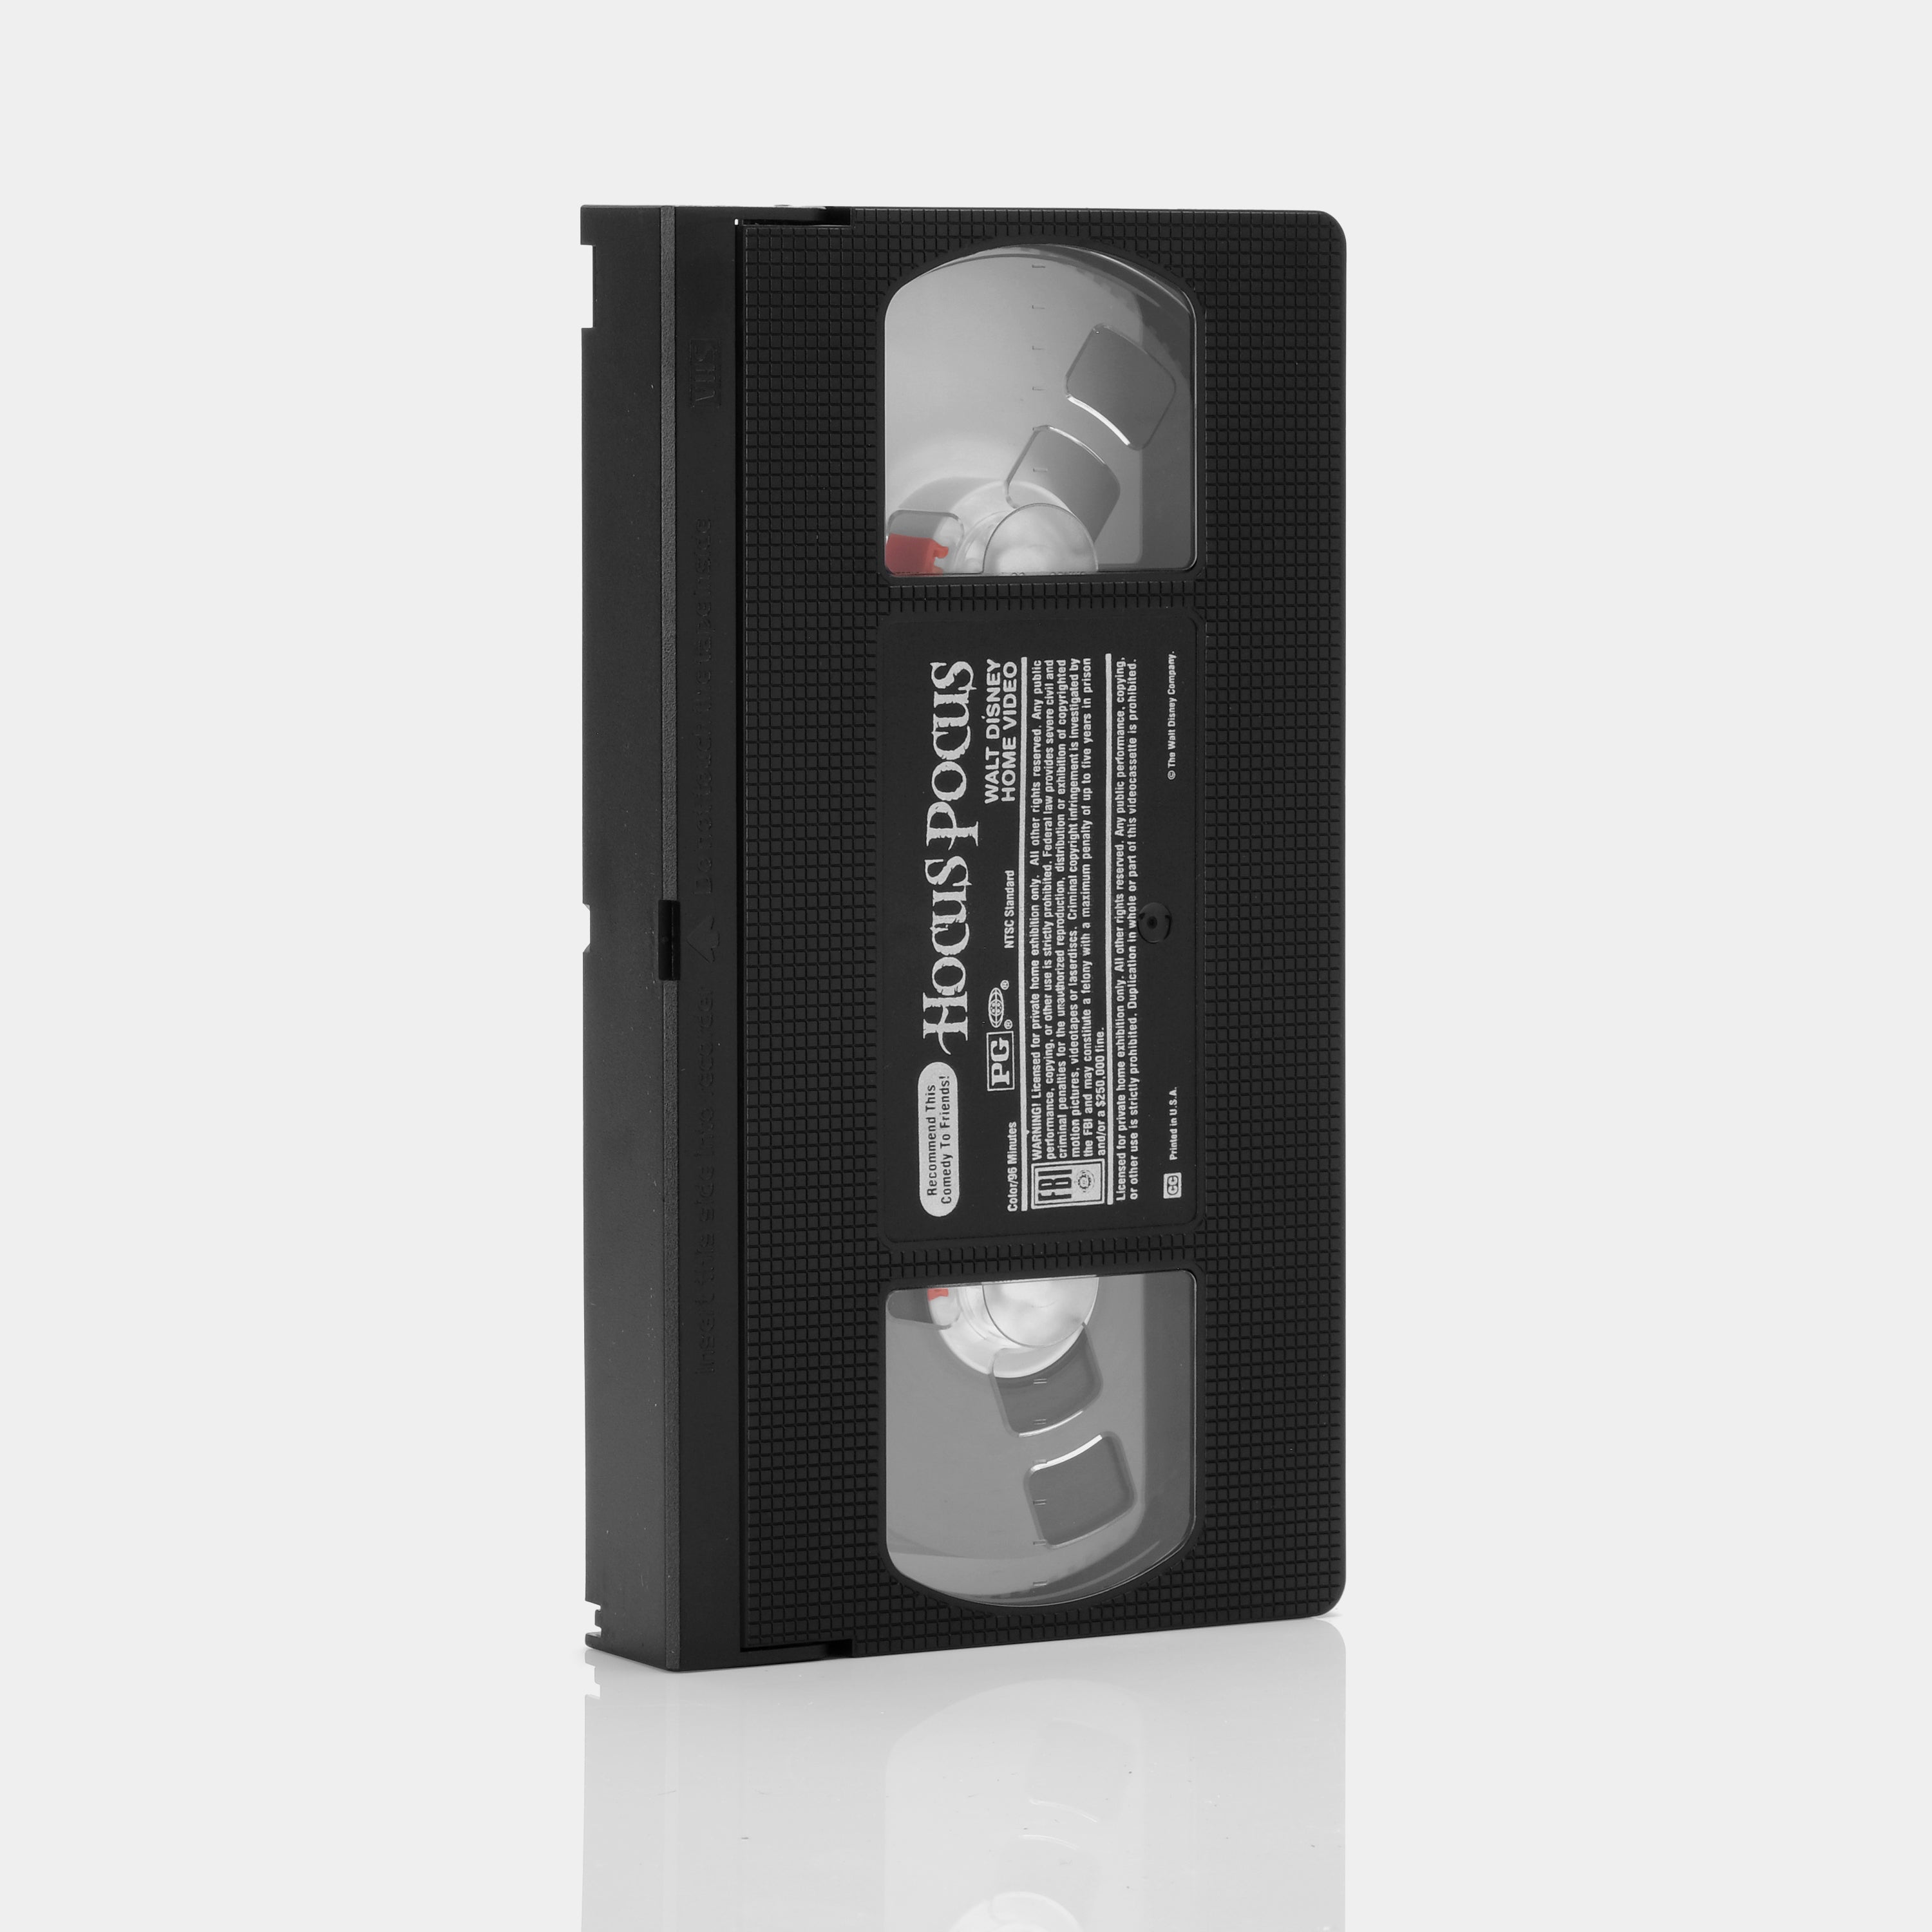 Hocus Pocus VHS Tape